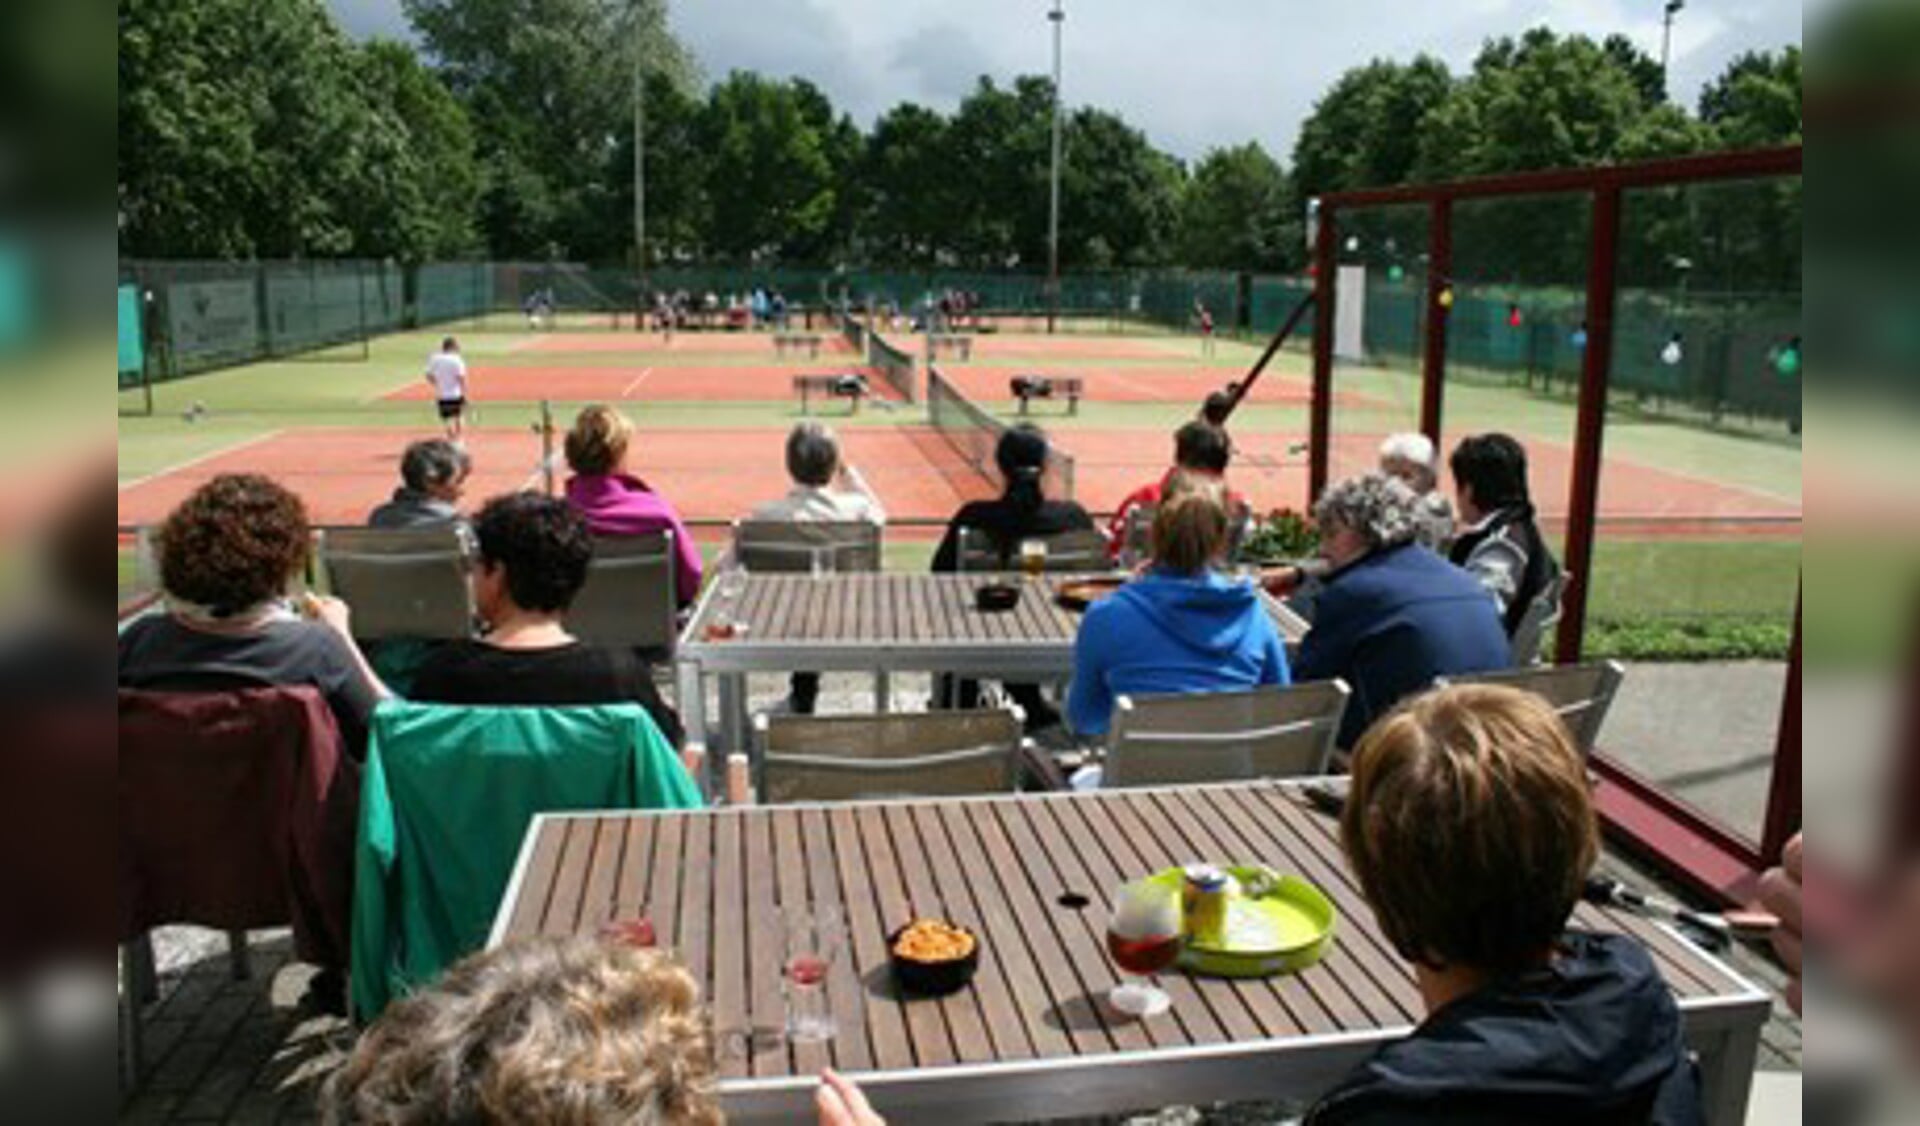 Tennisschool One 2 Tennis gaf vrijdag les bij de Kerstentuin in Bunnik